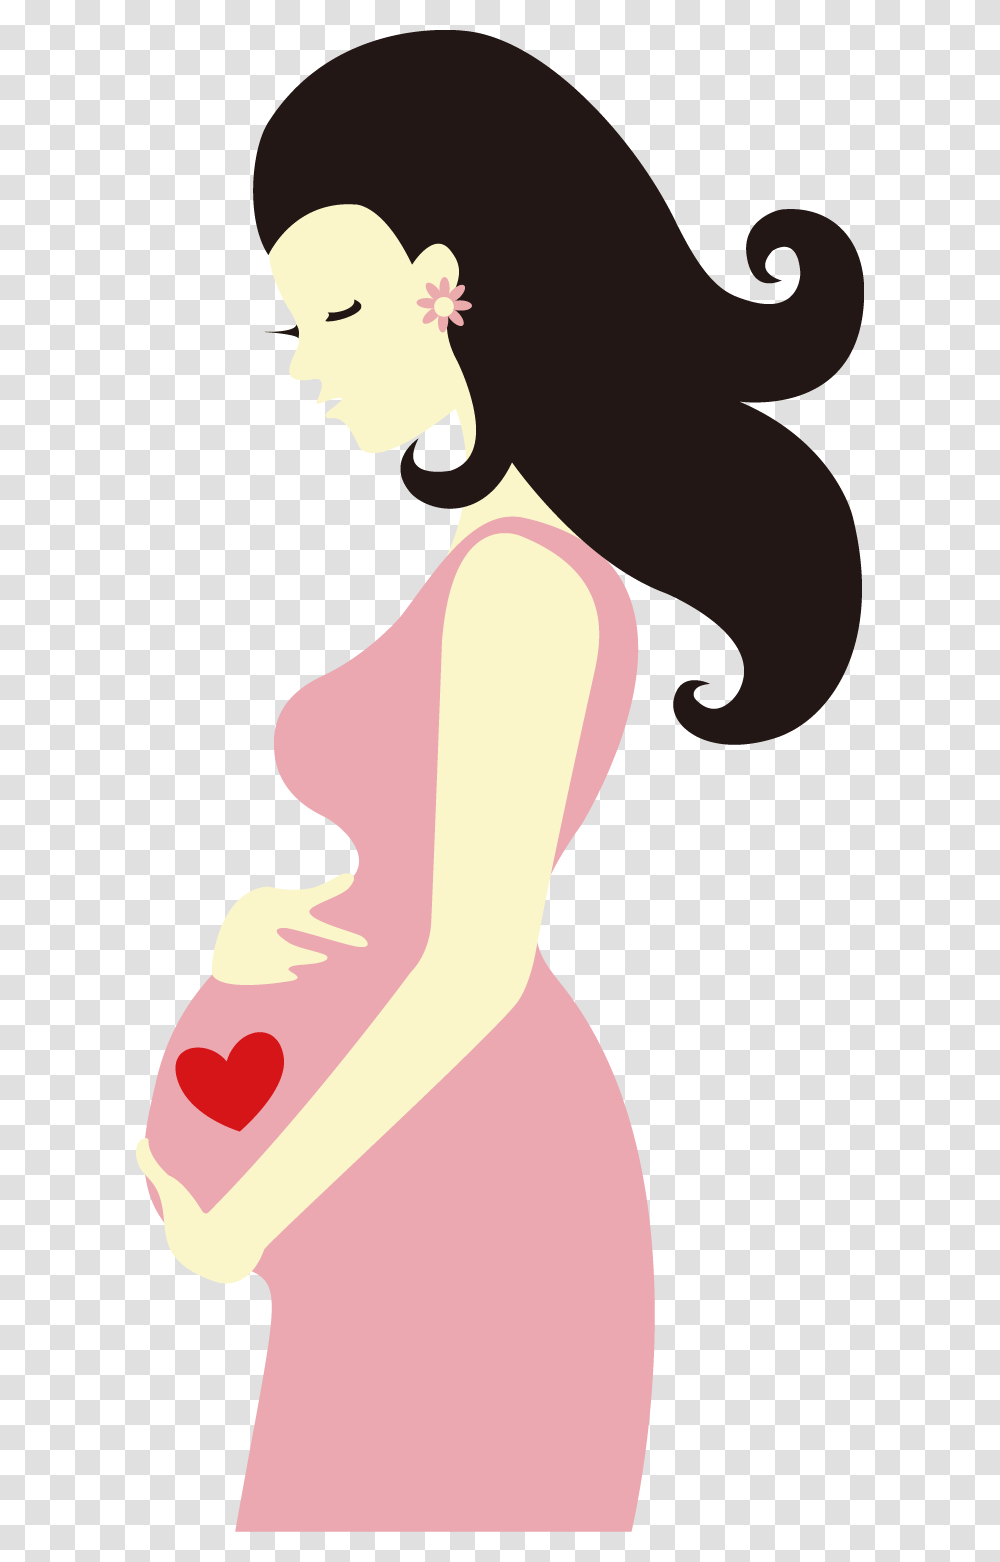 Aura Drawing Pregnant Cartoon Pregnant Woman, Label, Person, Human Transparent Png